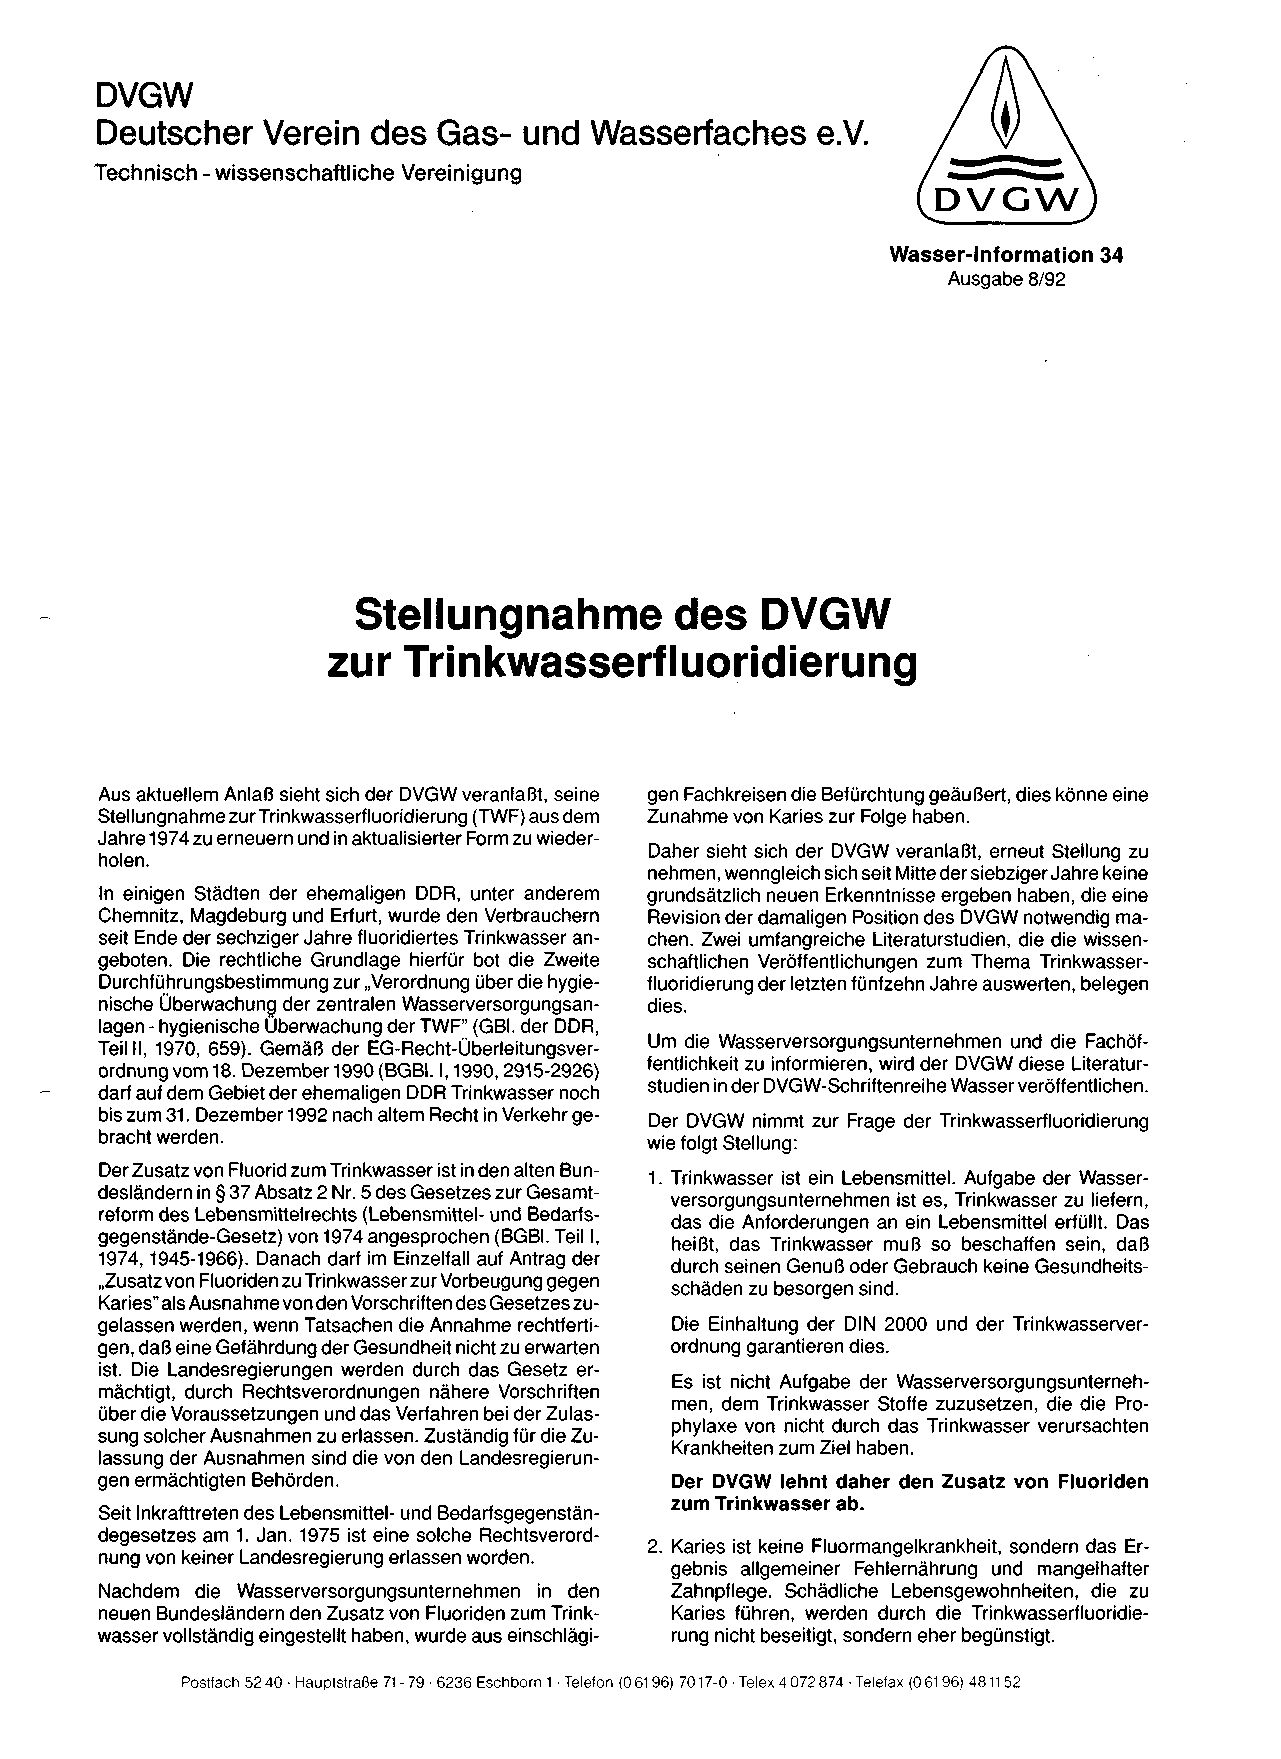 DVGW W Information Nr 34:1992-08